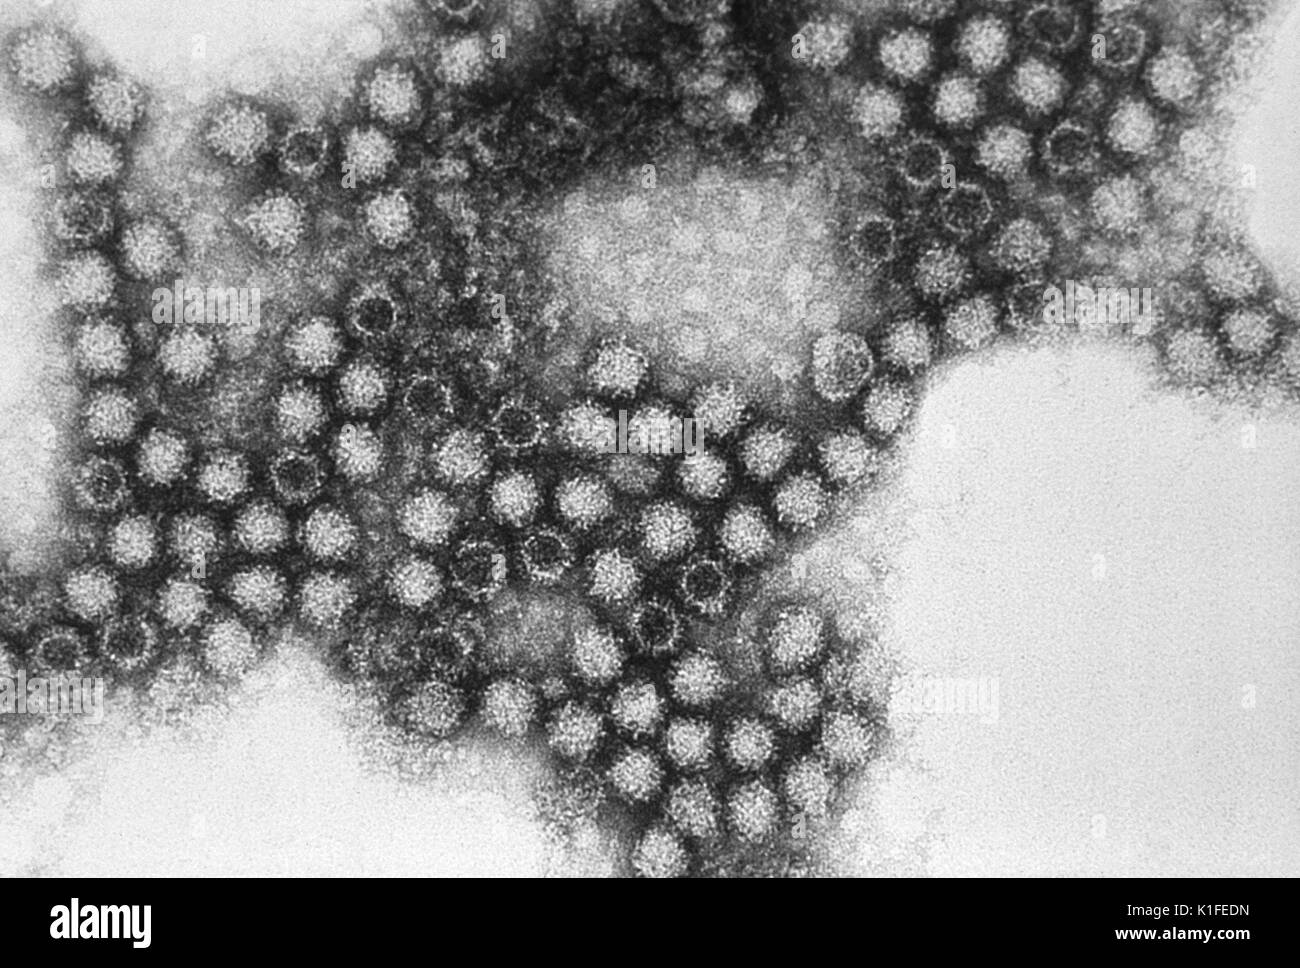 Diese Electron Micrograph enthüllt die morphologische Merkmale ausgestellt durch das Feline Calicivirus (Fcv), eine Familie der Caliciviridae, Felines Calicivirus Virionen durchschnittlich 35 nm - 40 nm Durchmesser und Ausstellung Schale - wie Depressionen, die manchmal Manifest als 'Star von David 'Array. Das feline Symptome schließen der oberen Atemwege mit orale Ulzerationen und Pneumonitis. Bild mit freundlicher Genehmigung von CDC/Dr. Erskine Palmer., 1981. Stockfoto